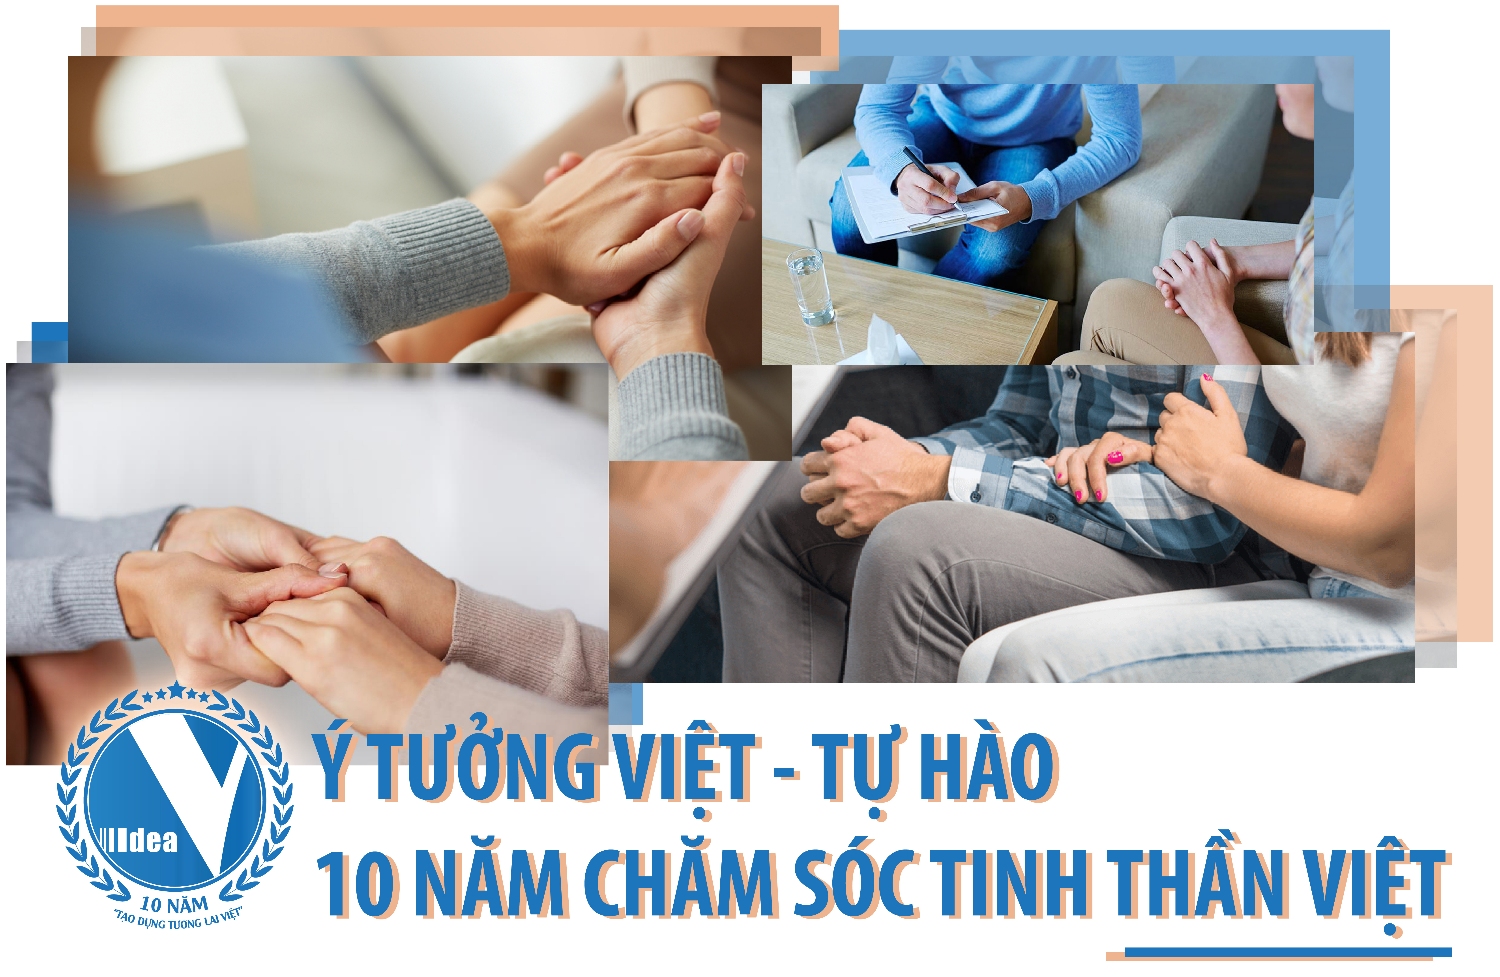 Trung tâm tư vấn tâm lý TPHCM - Ý tưởng Việt